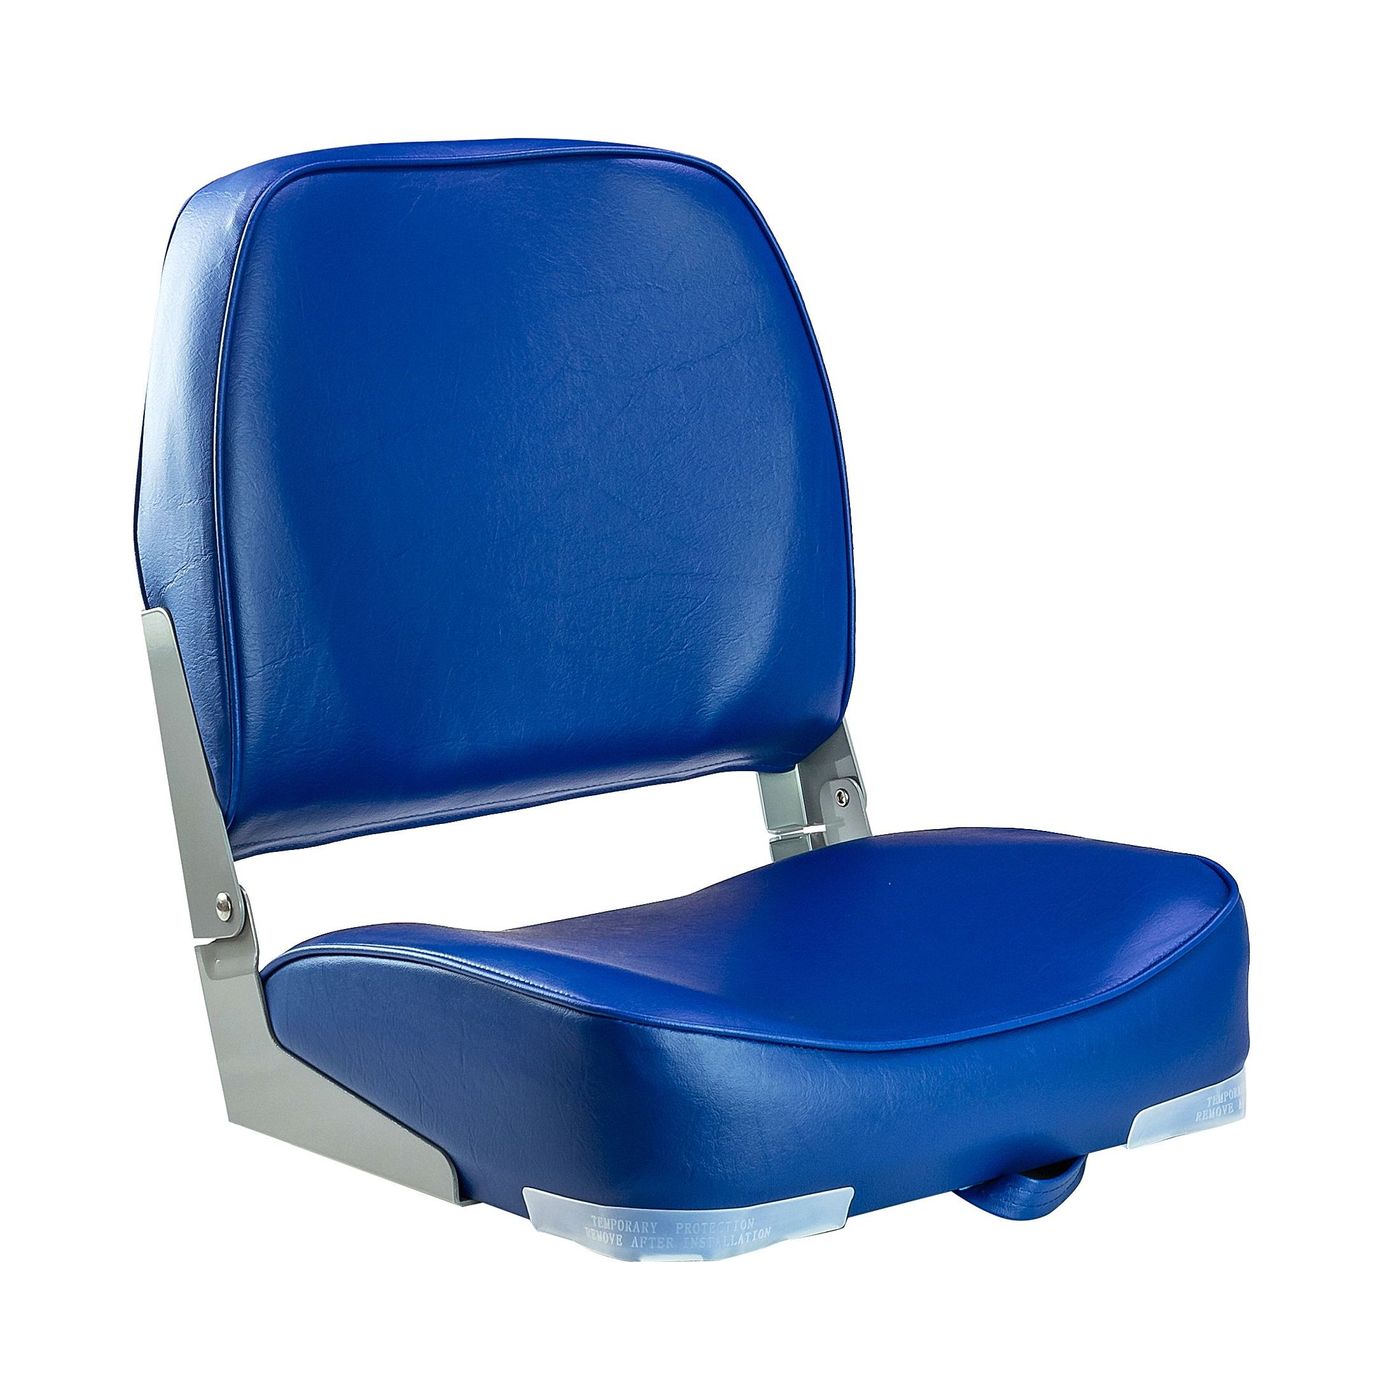 Кресло мягкое складное, обивка винил, цвет синий, Marine Rocket 75103B-MR стул leset вайд каркас белый велюр синий